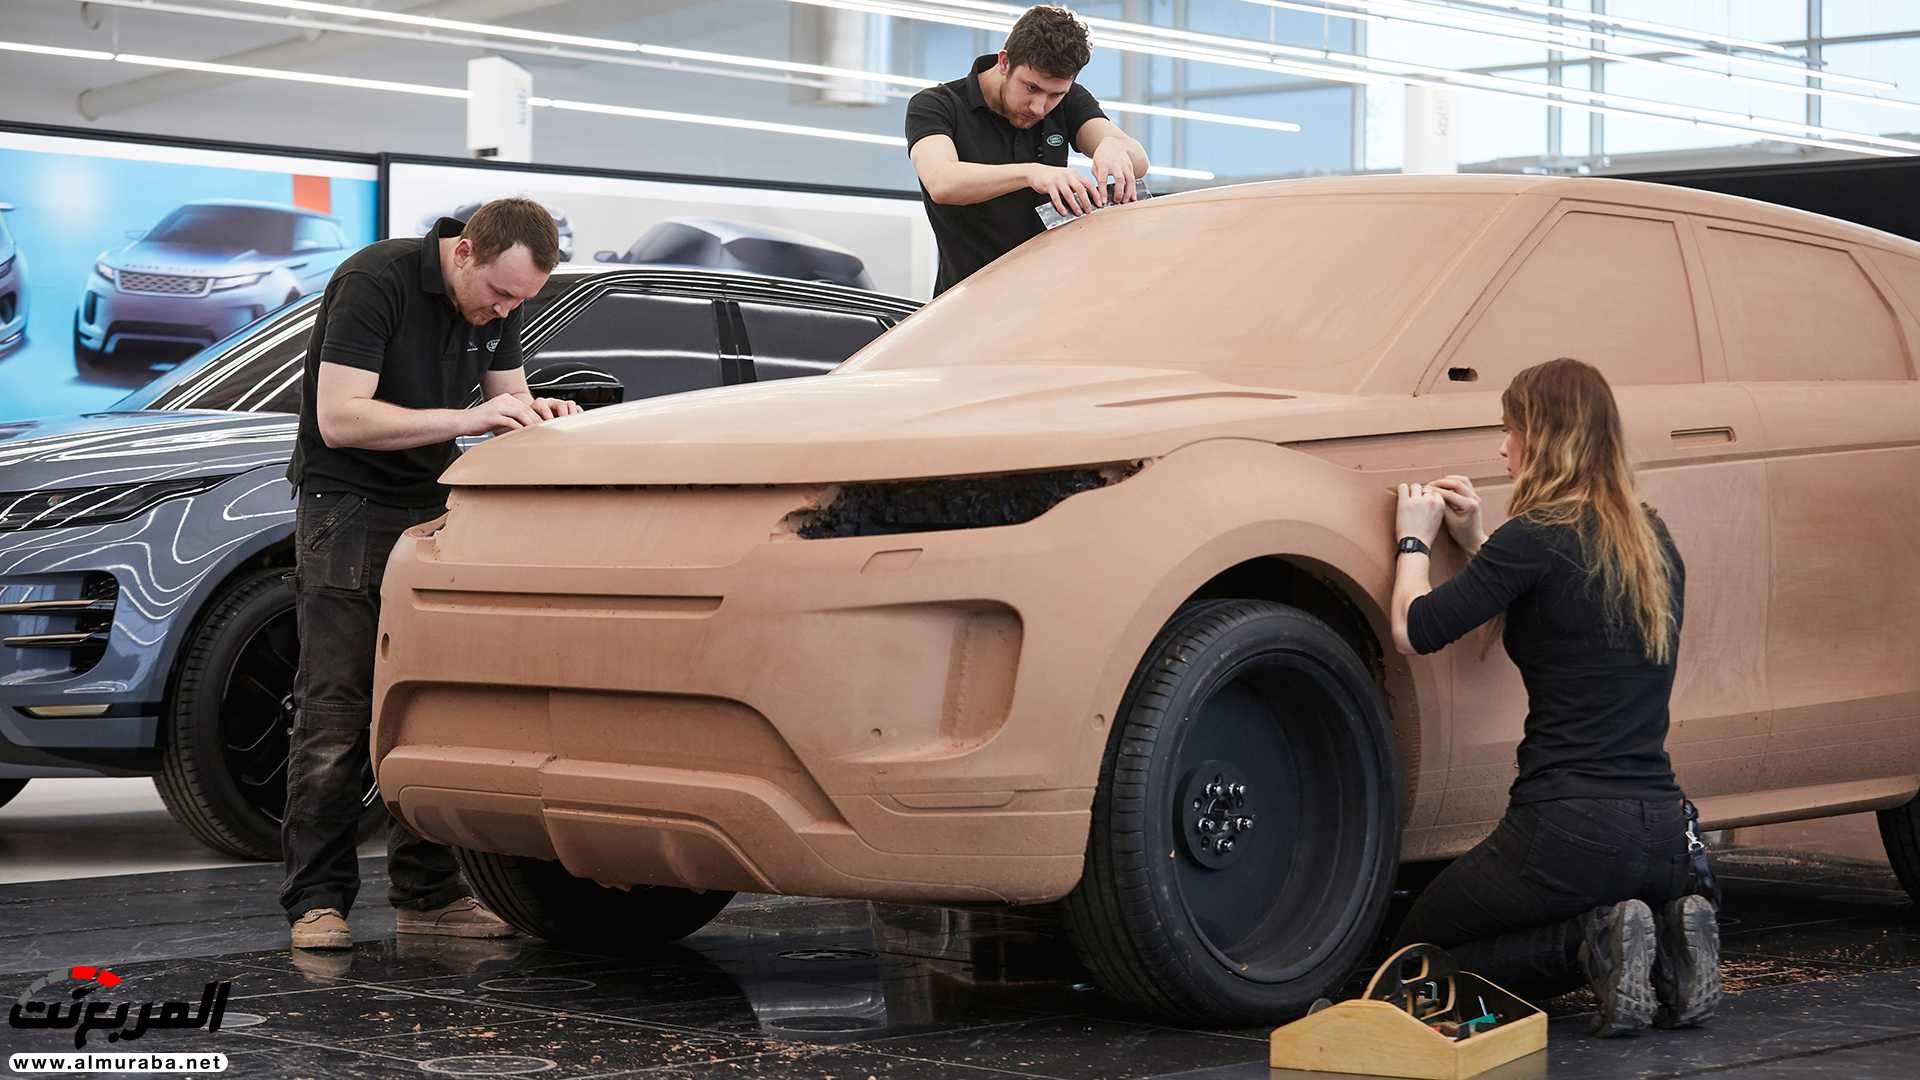 اهم 7 معلومات عن رنج روفر ايفوك 2020 الجديدة كلياً Range Rover Evoque 31